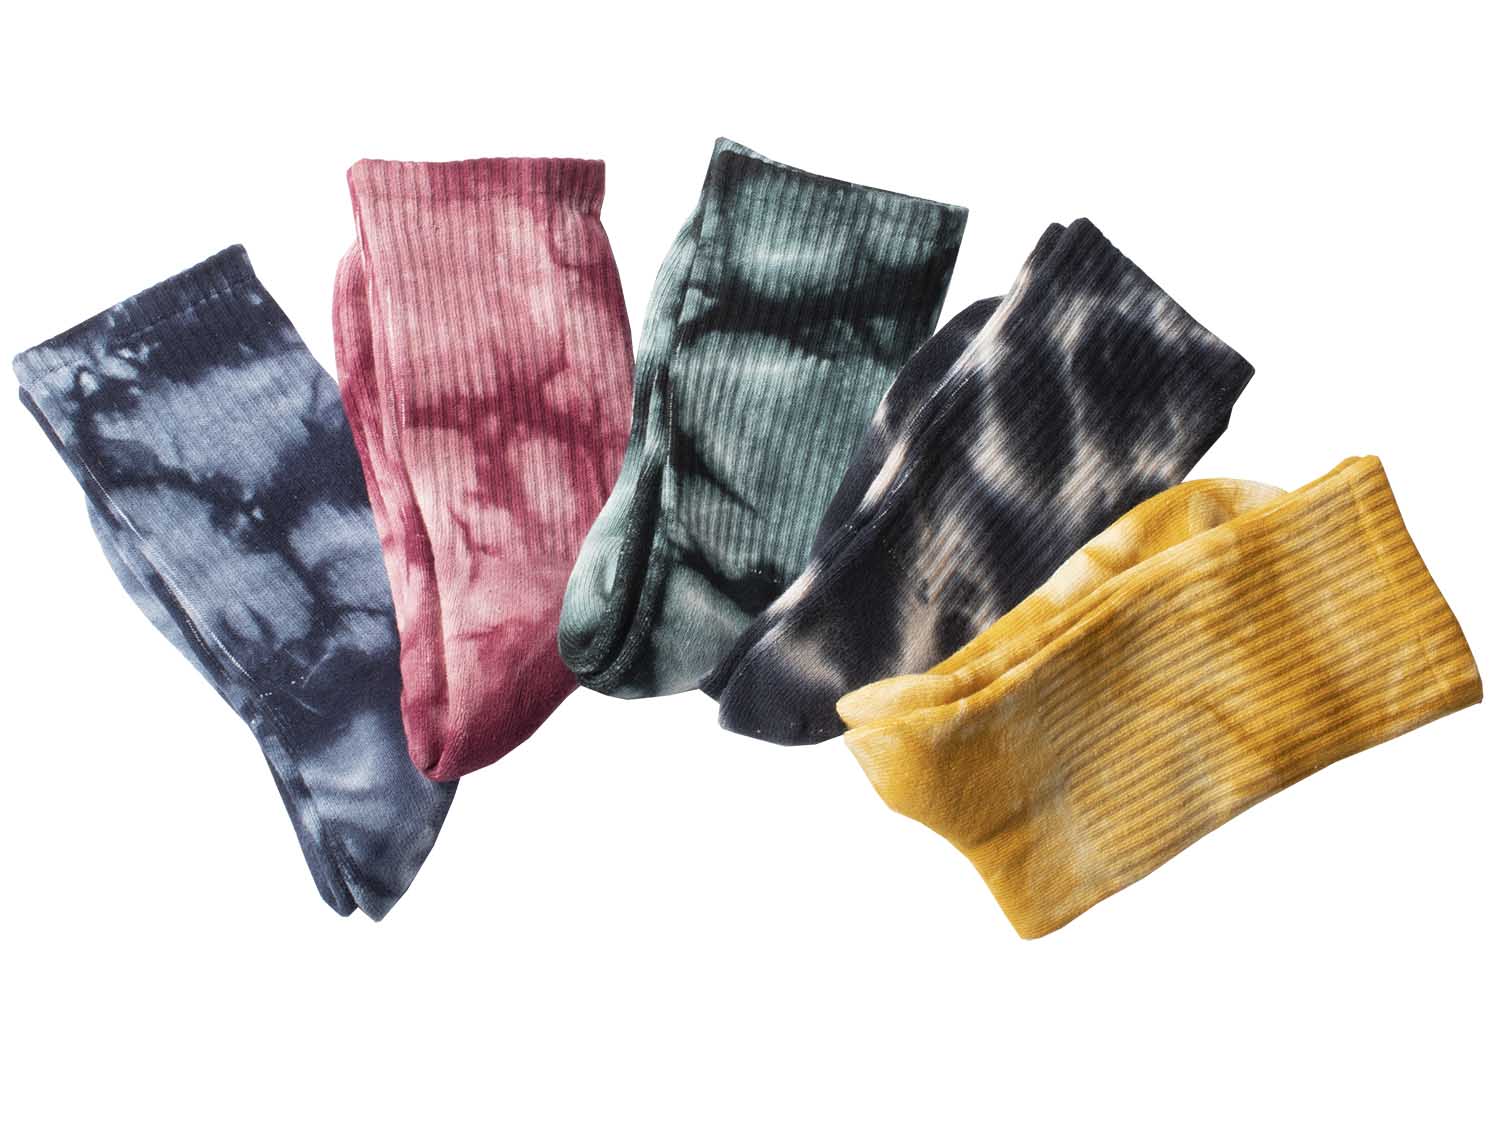 Category: Tie-Dye Socks - Rō